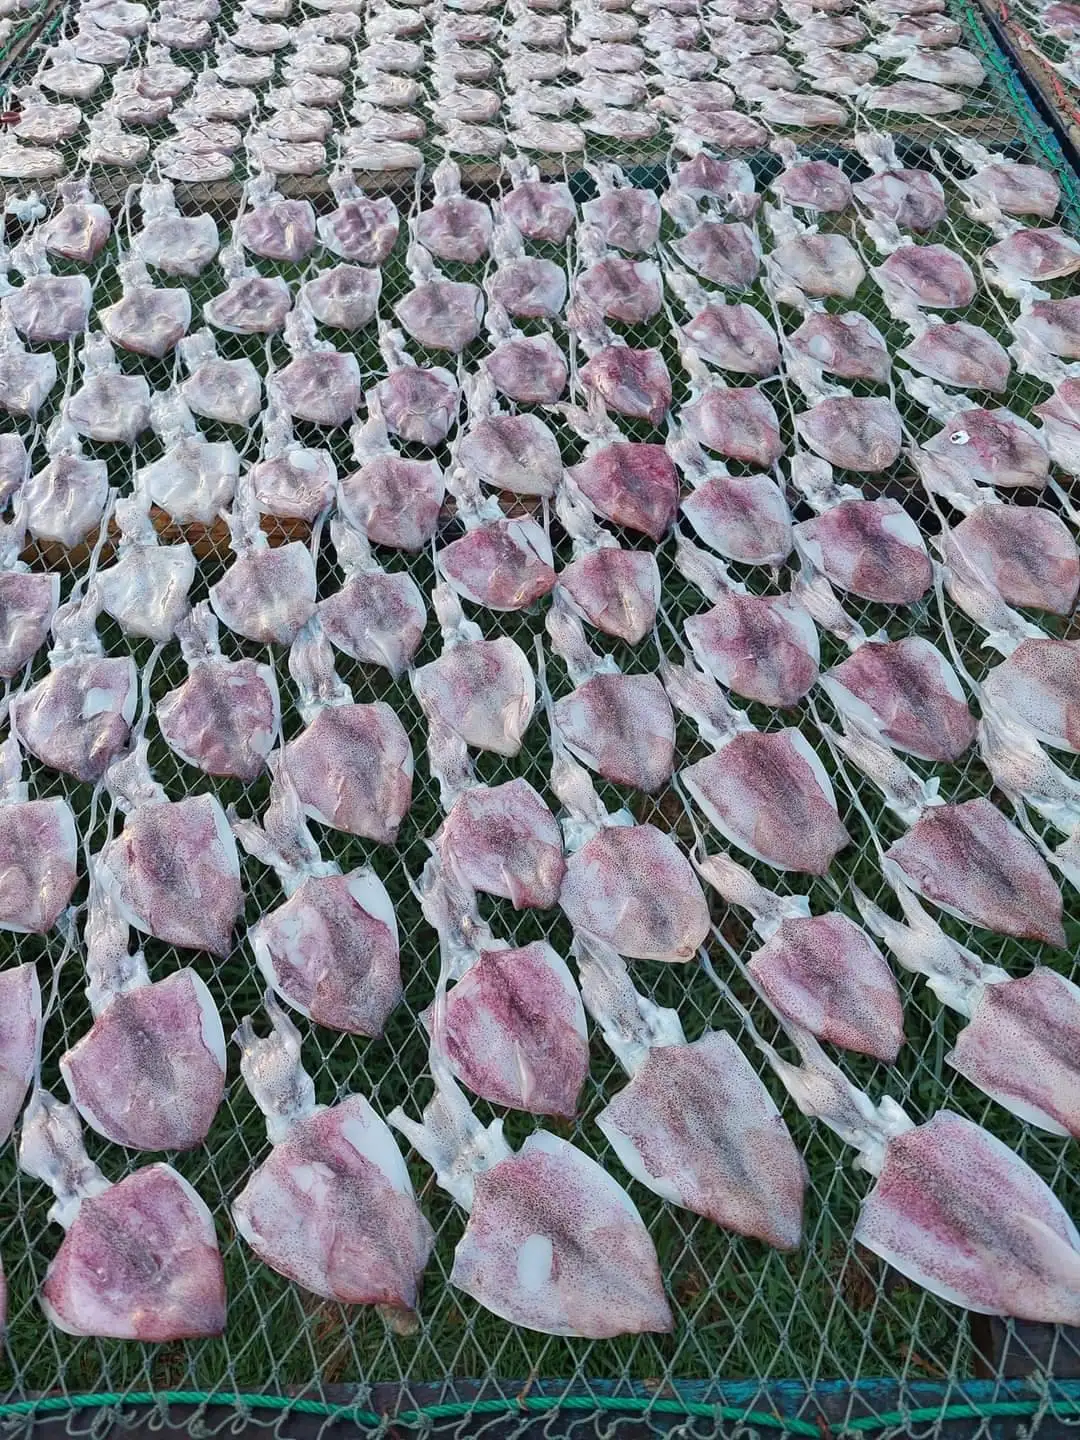 Органический высококачественный сушеный кальмар из Таиланда (4 дюйма), цветная упаковка насыпью, естественное происхождение